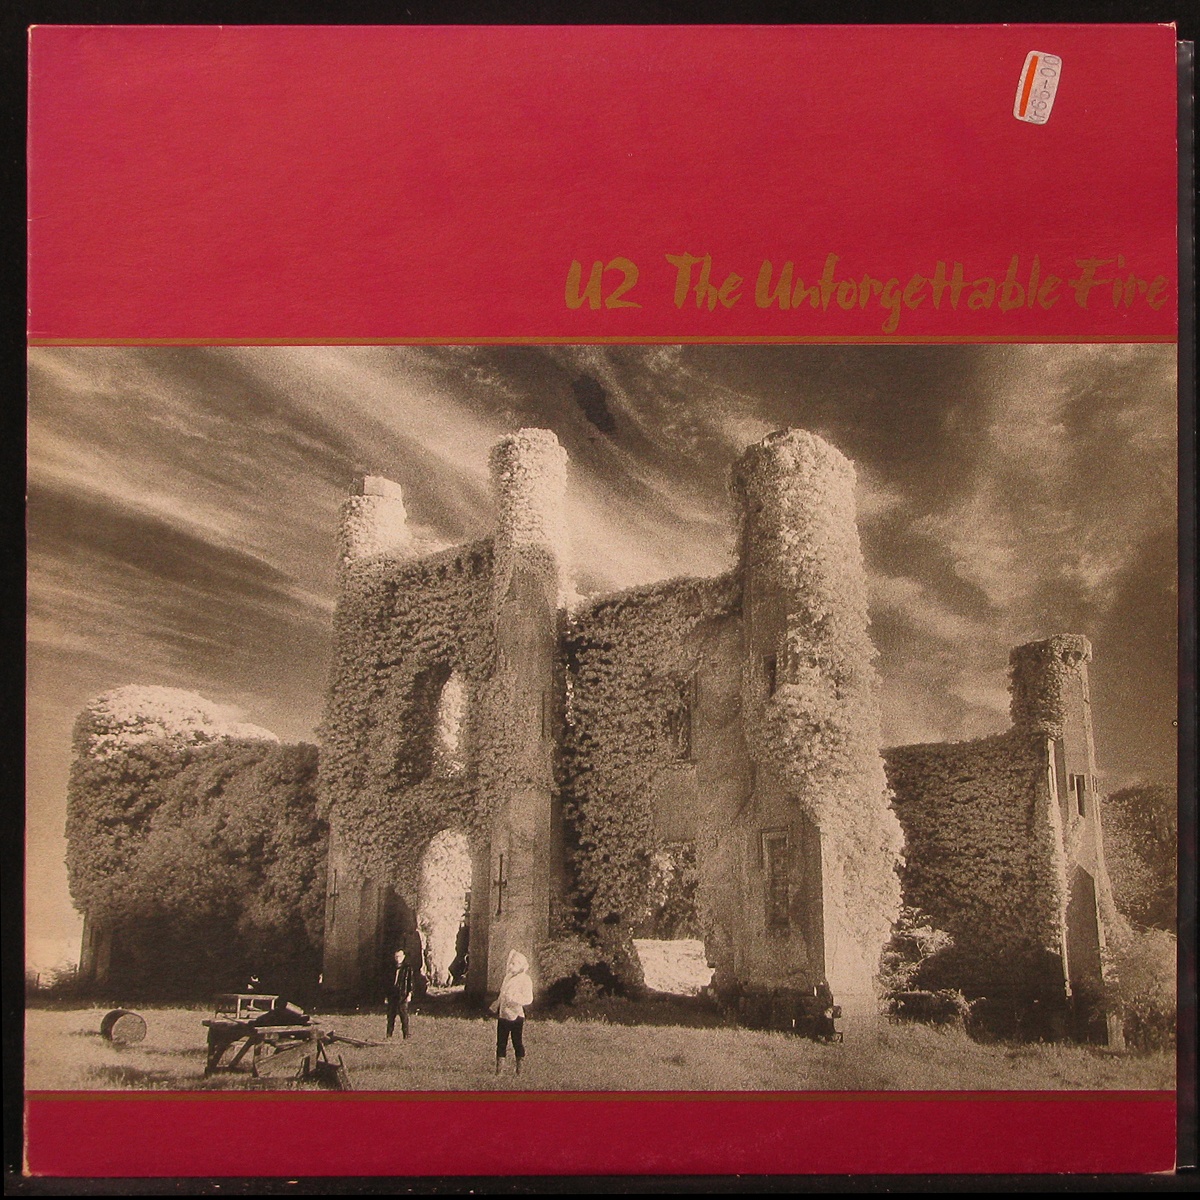 LP U2 — Unforgettable Fire фото